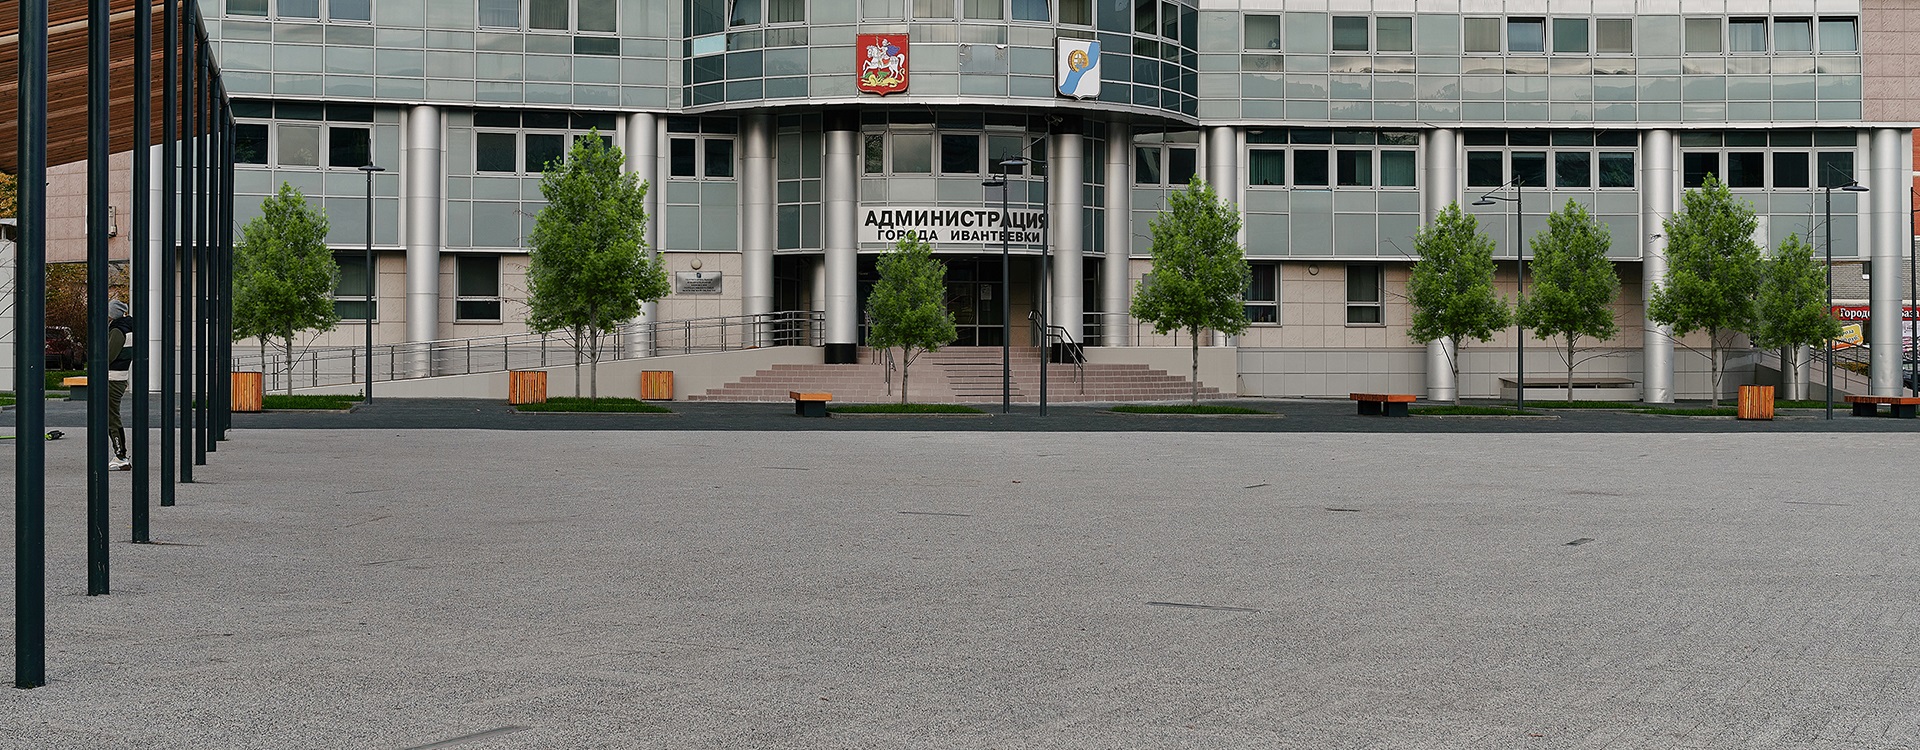 Центральная площадь, г.Ивантеевка